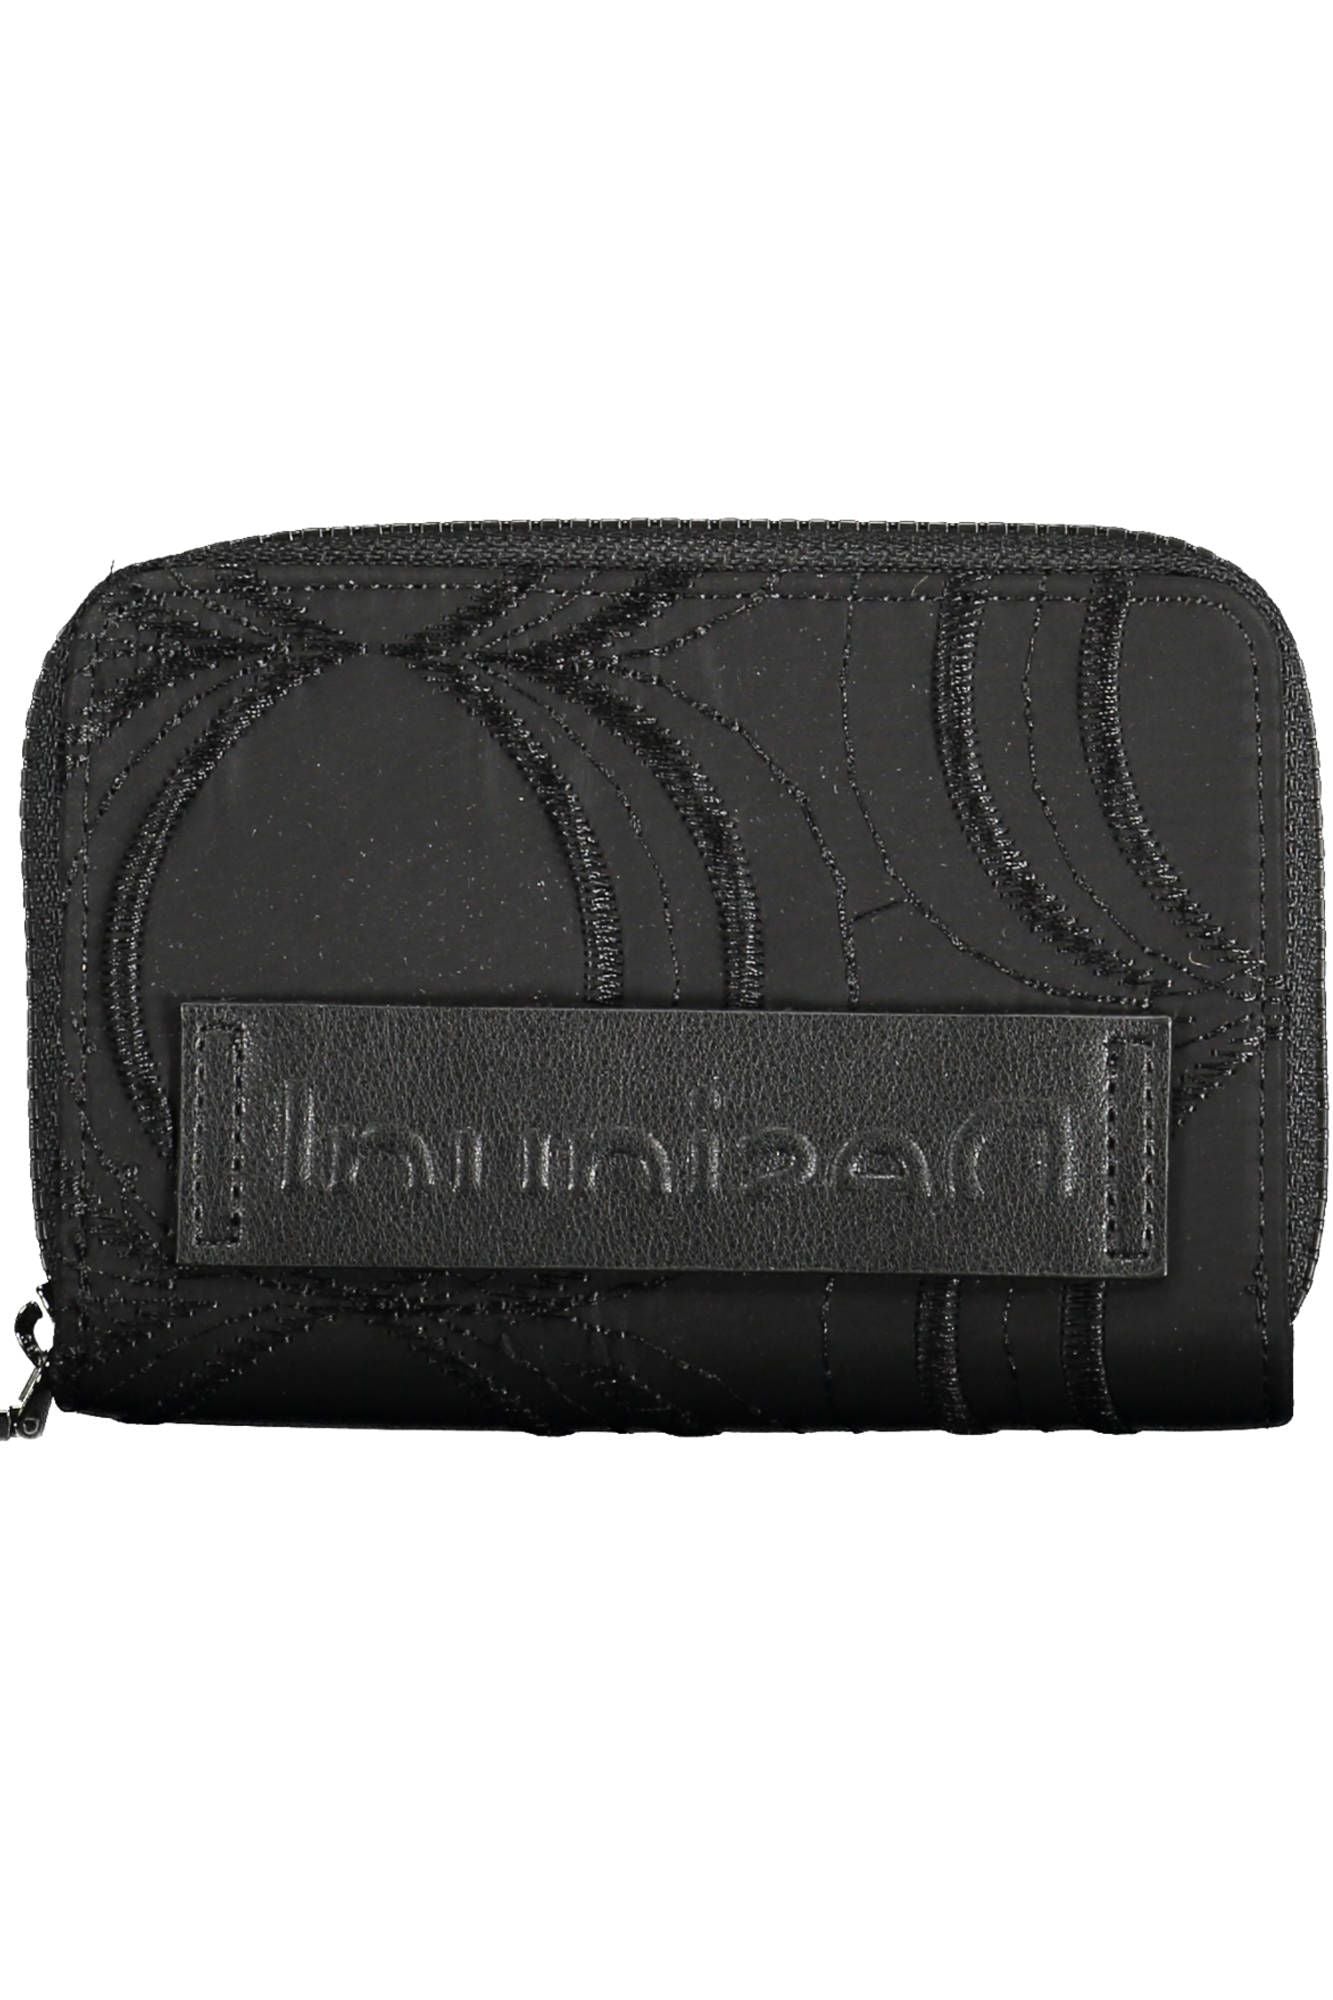 Chic Multifunctional Black Zip Wallet